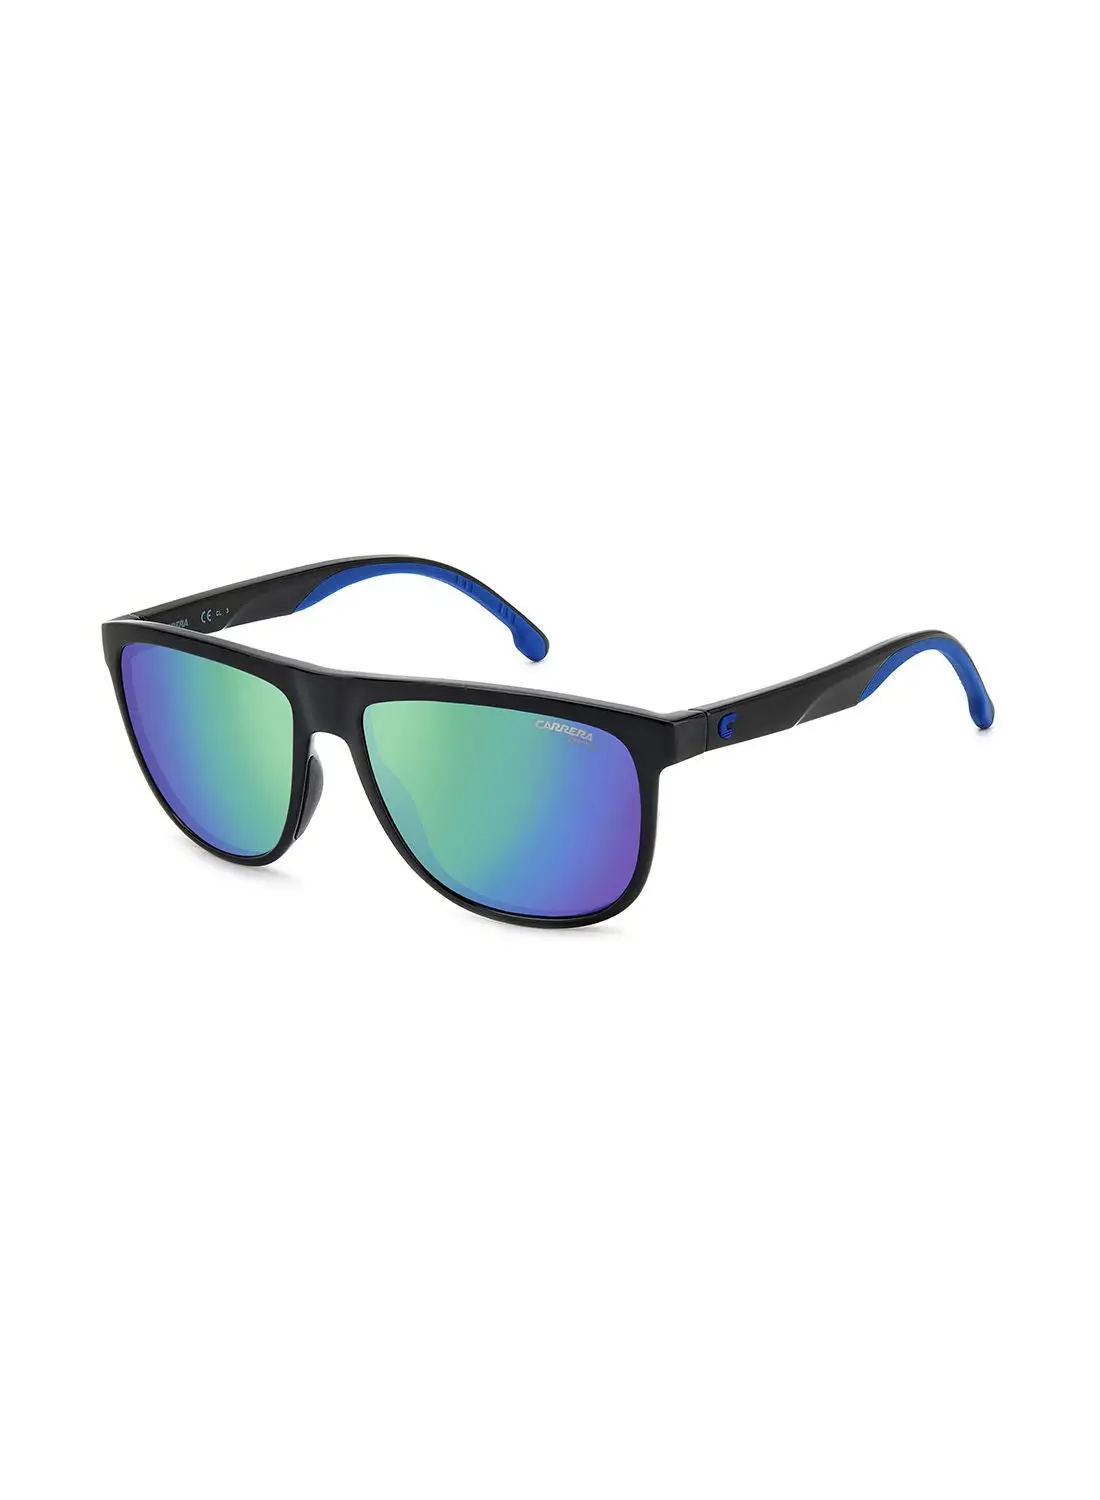 كاريرا نظارة شمسية للرجال للحماية من الأشعة فوق البنفسجية - Carrera 8059/S أسود/أزرق 58 - مقاس العدسة: 58 ملم